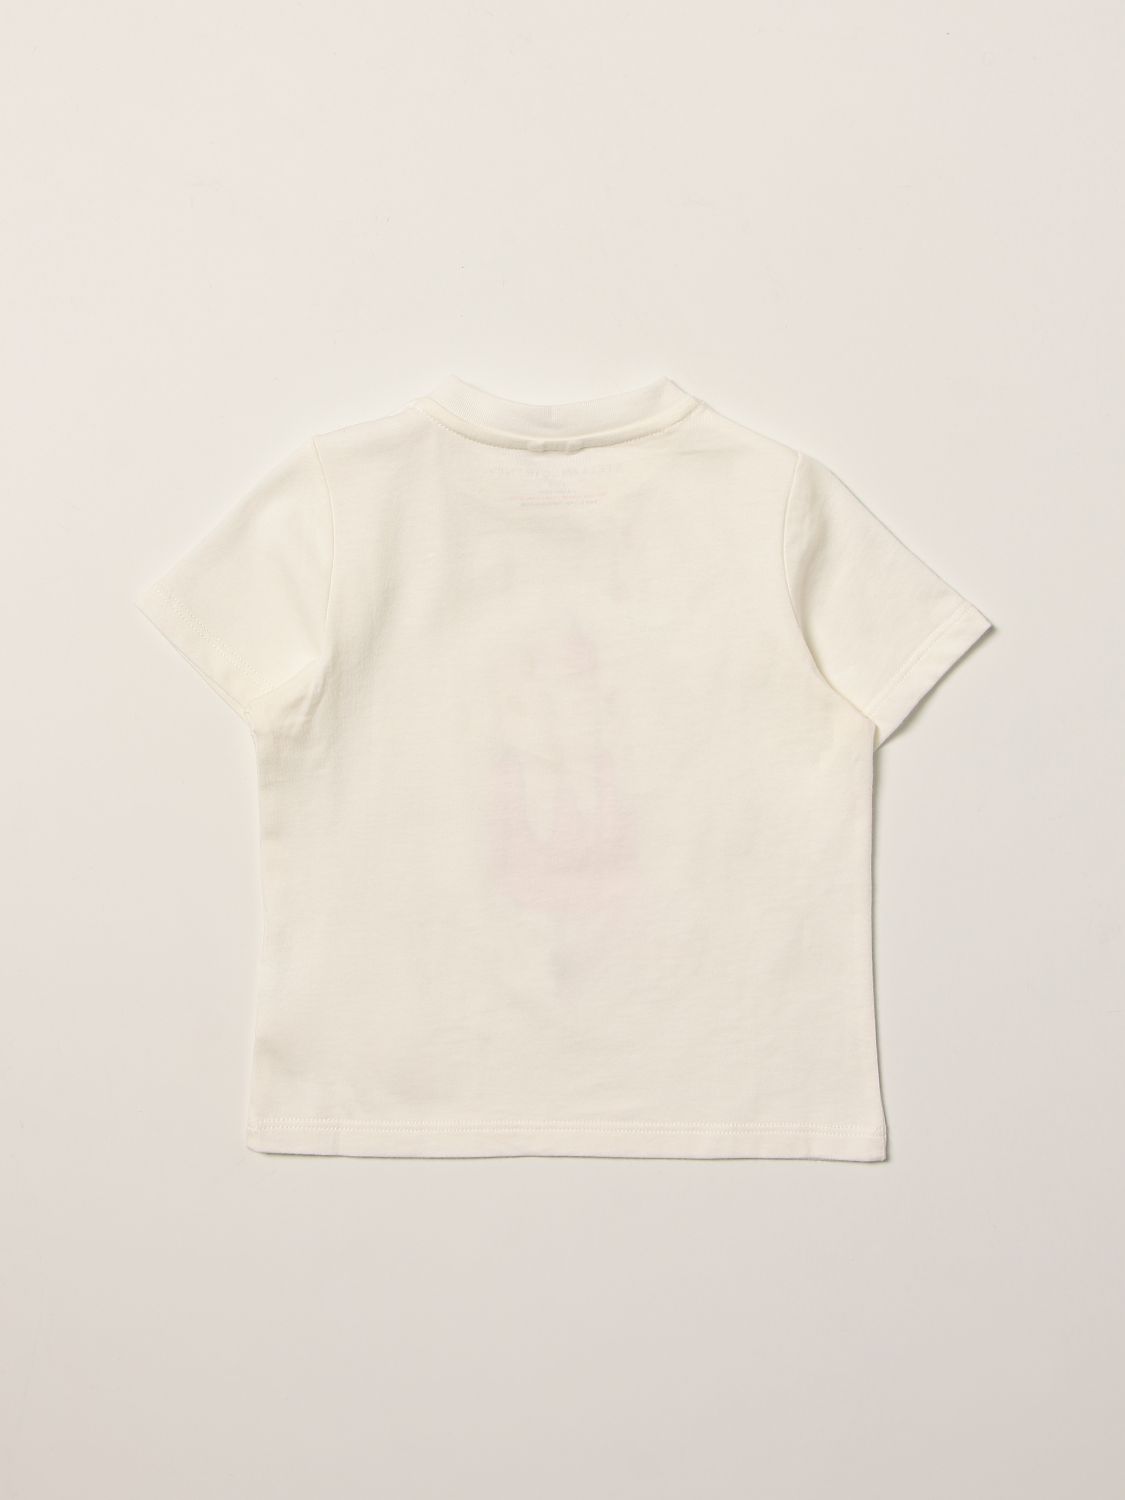 Tシャツ ステラマッカートニー: Tシャツ 男の子 Stella Mccartney ホワイト 2